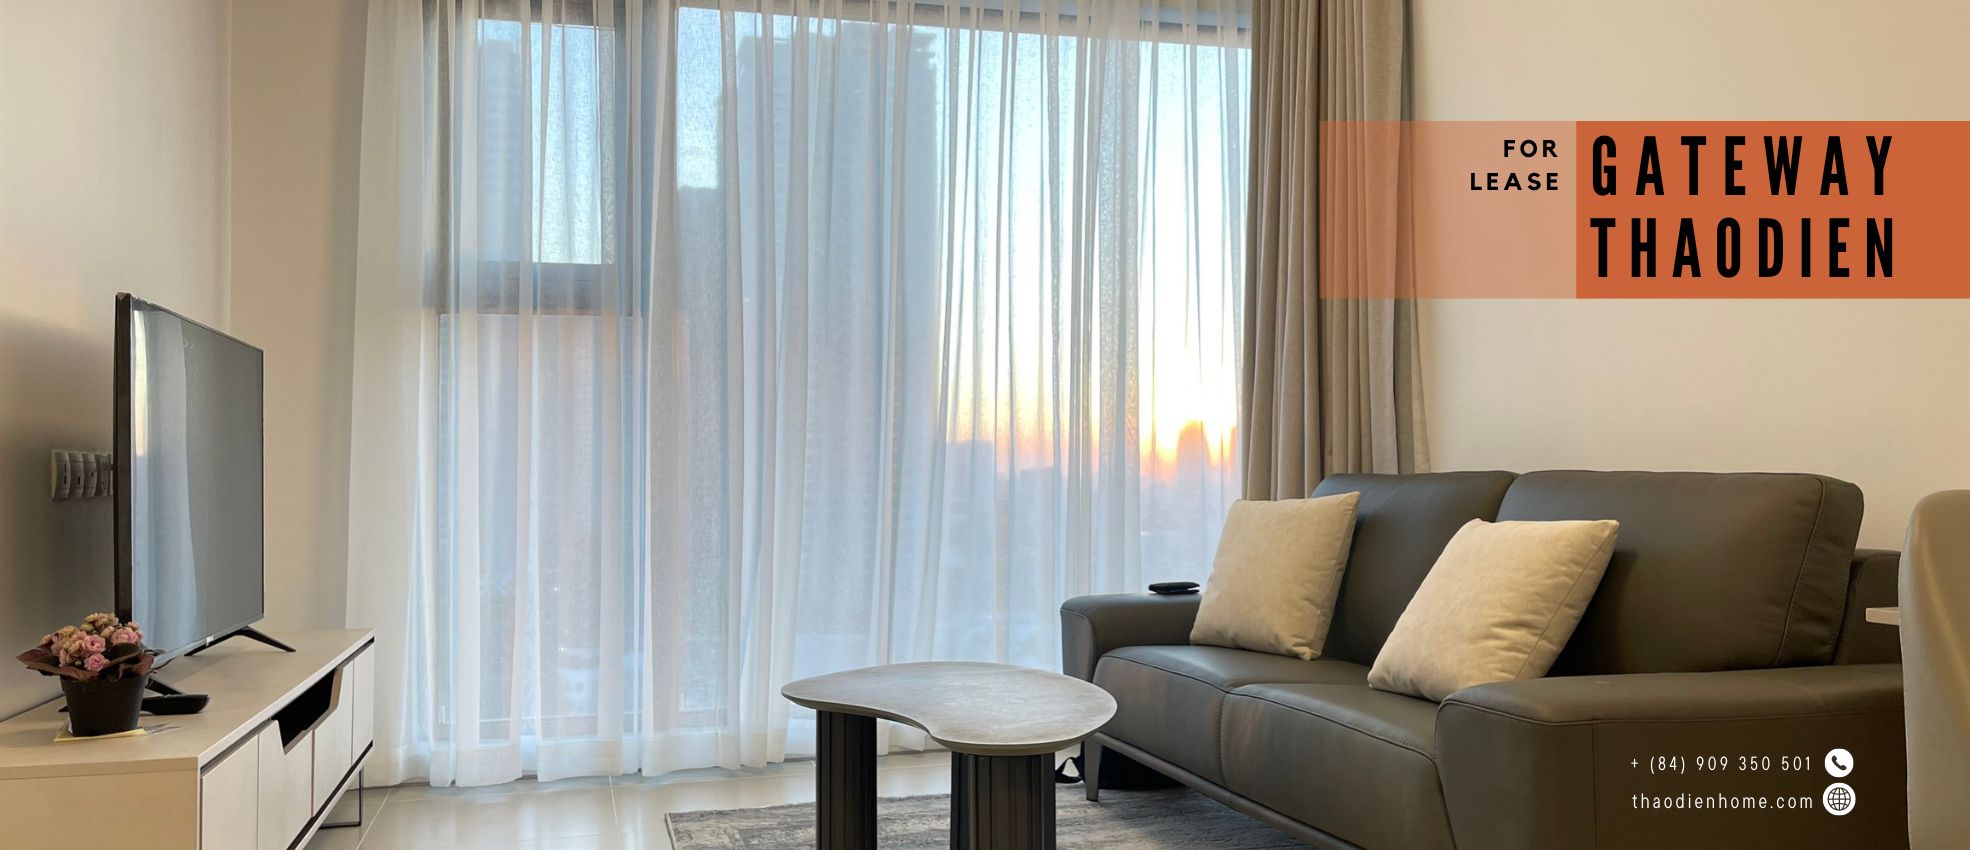 Modern 1BR Gateway Thao Dien Apartment with Stunning Landmark 81 Views